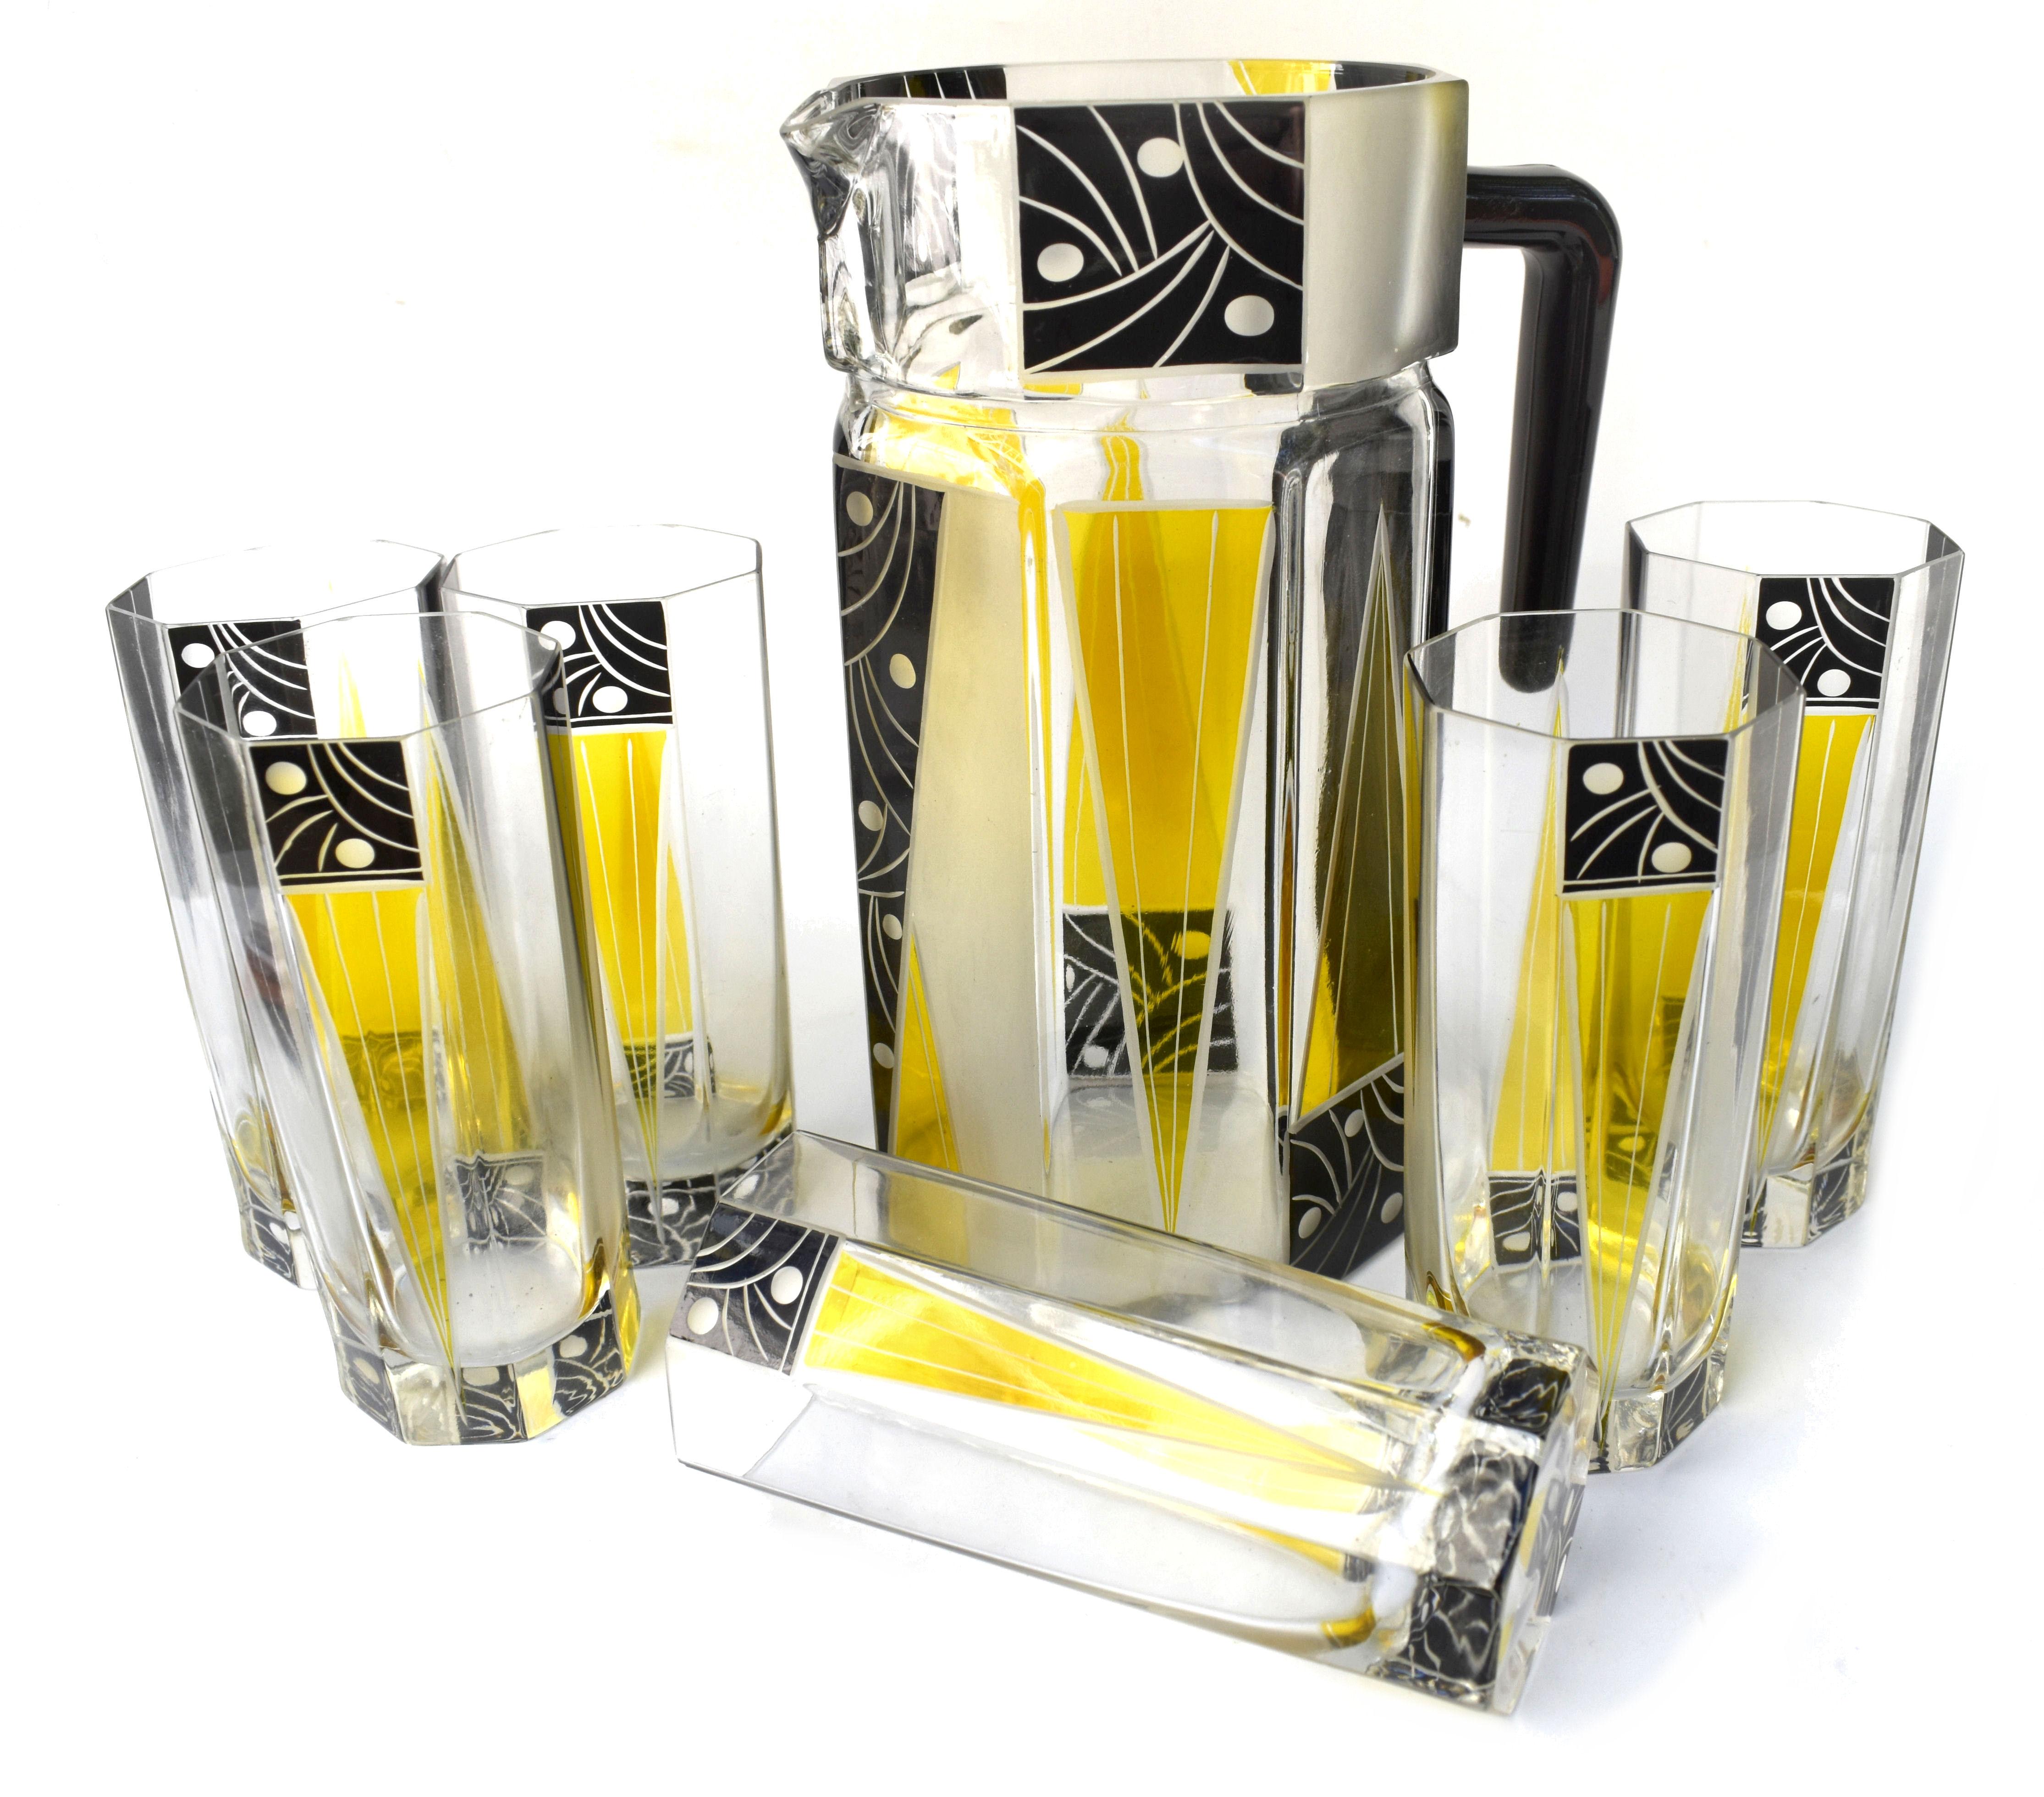 Service à limonade en verre tchèque Art déco des années 1930 de très haute qualité et d'un aspect très frappant. Comprend un pichet en cristal de forme classique et six verres assortis de taille décente (hauteur 14 cm, diamètre 6 cm). L'ensemble est